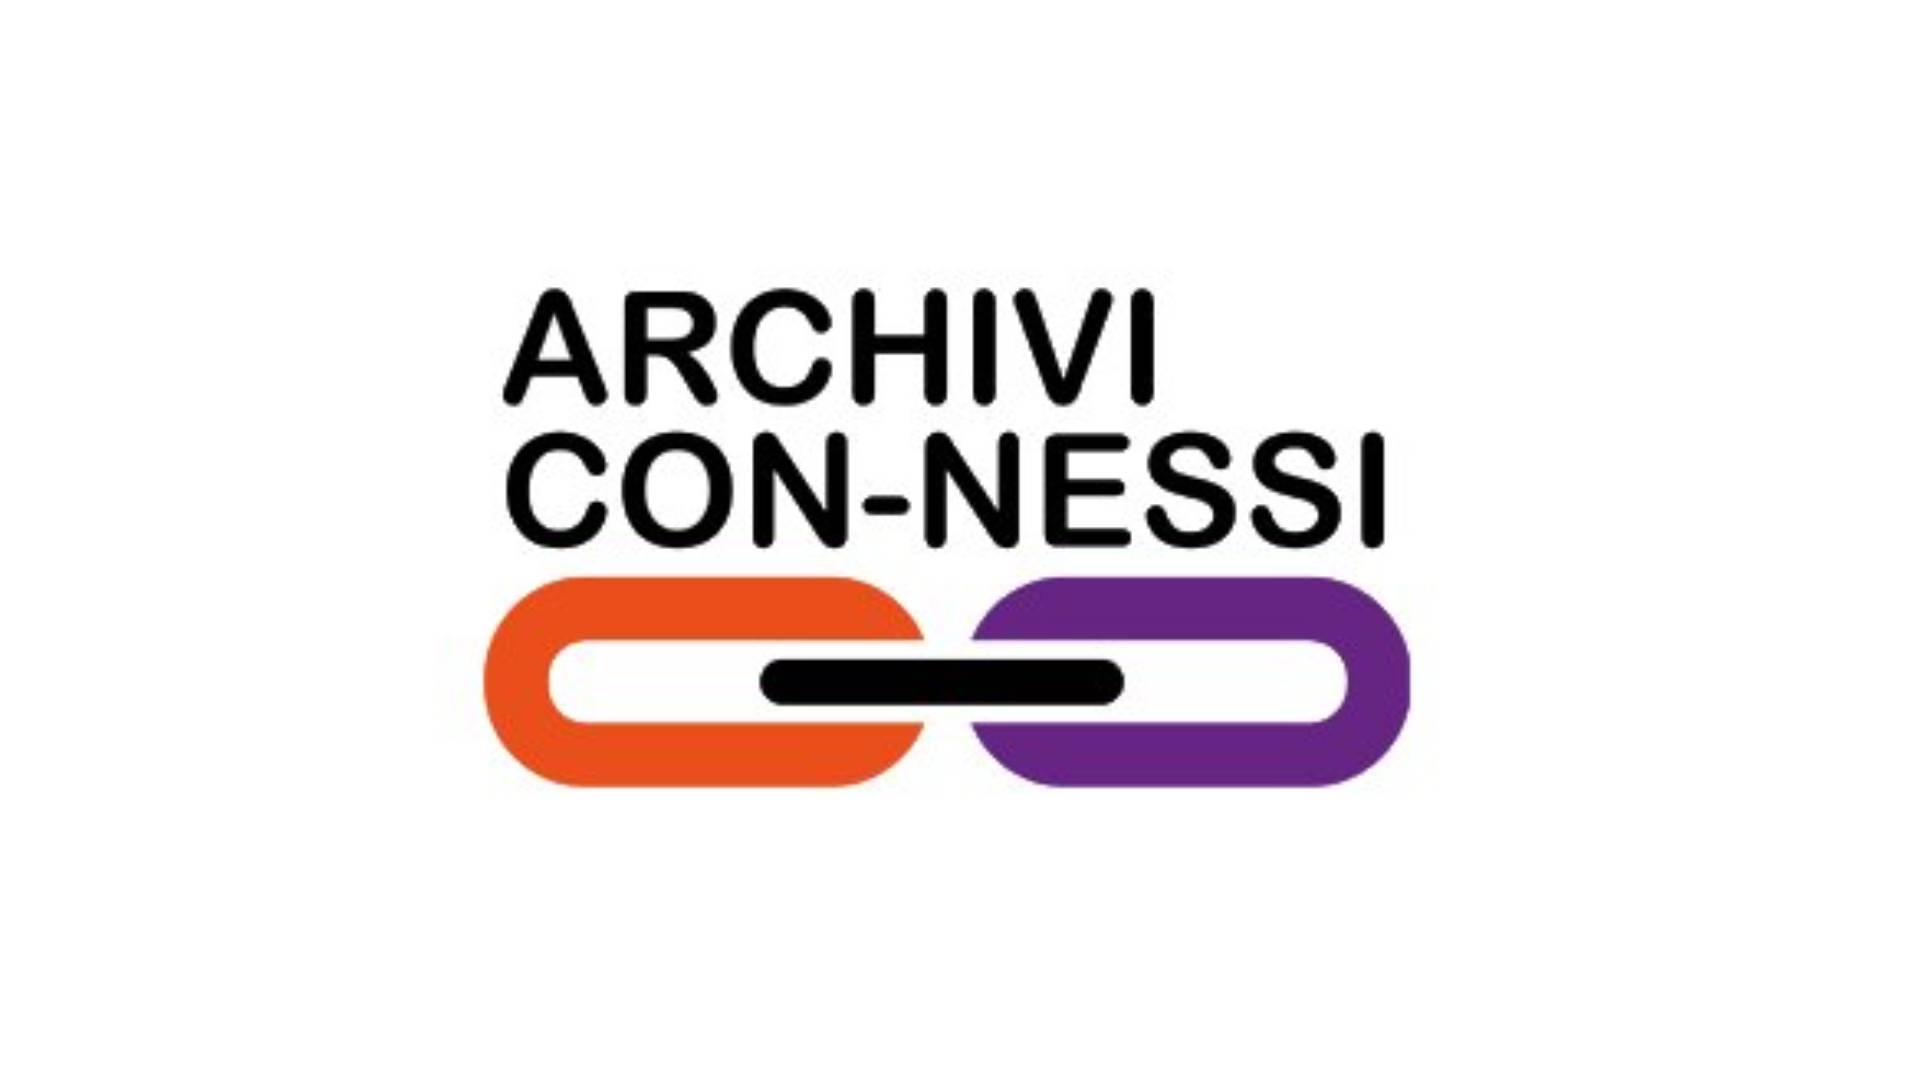 Archivi Con-nessi